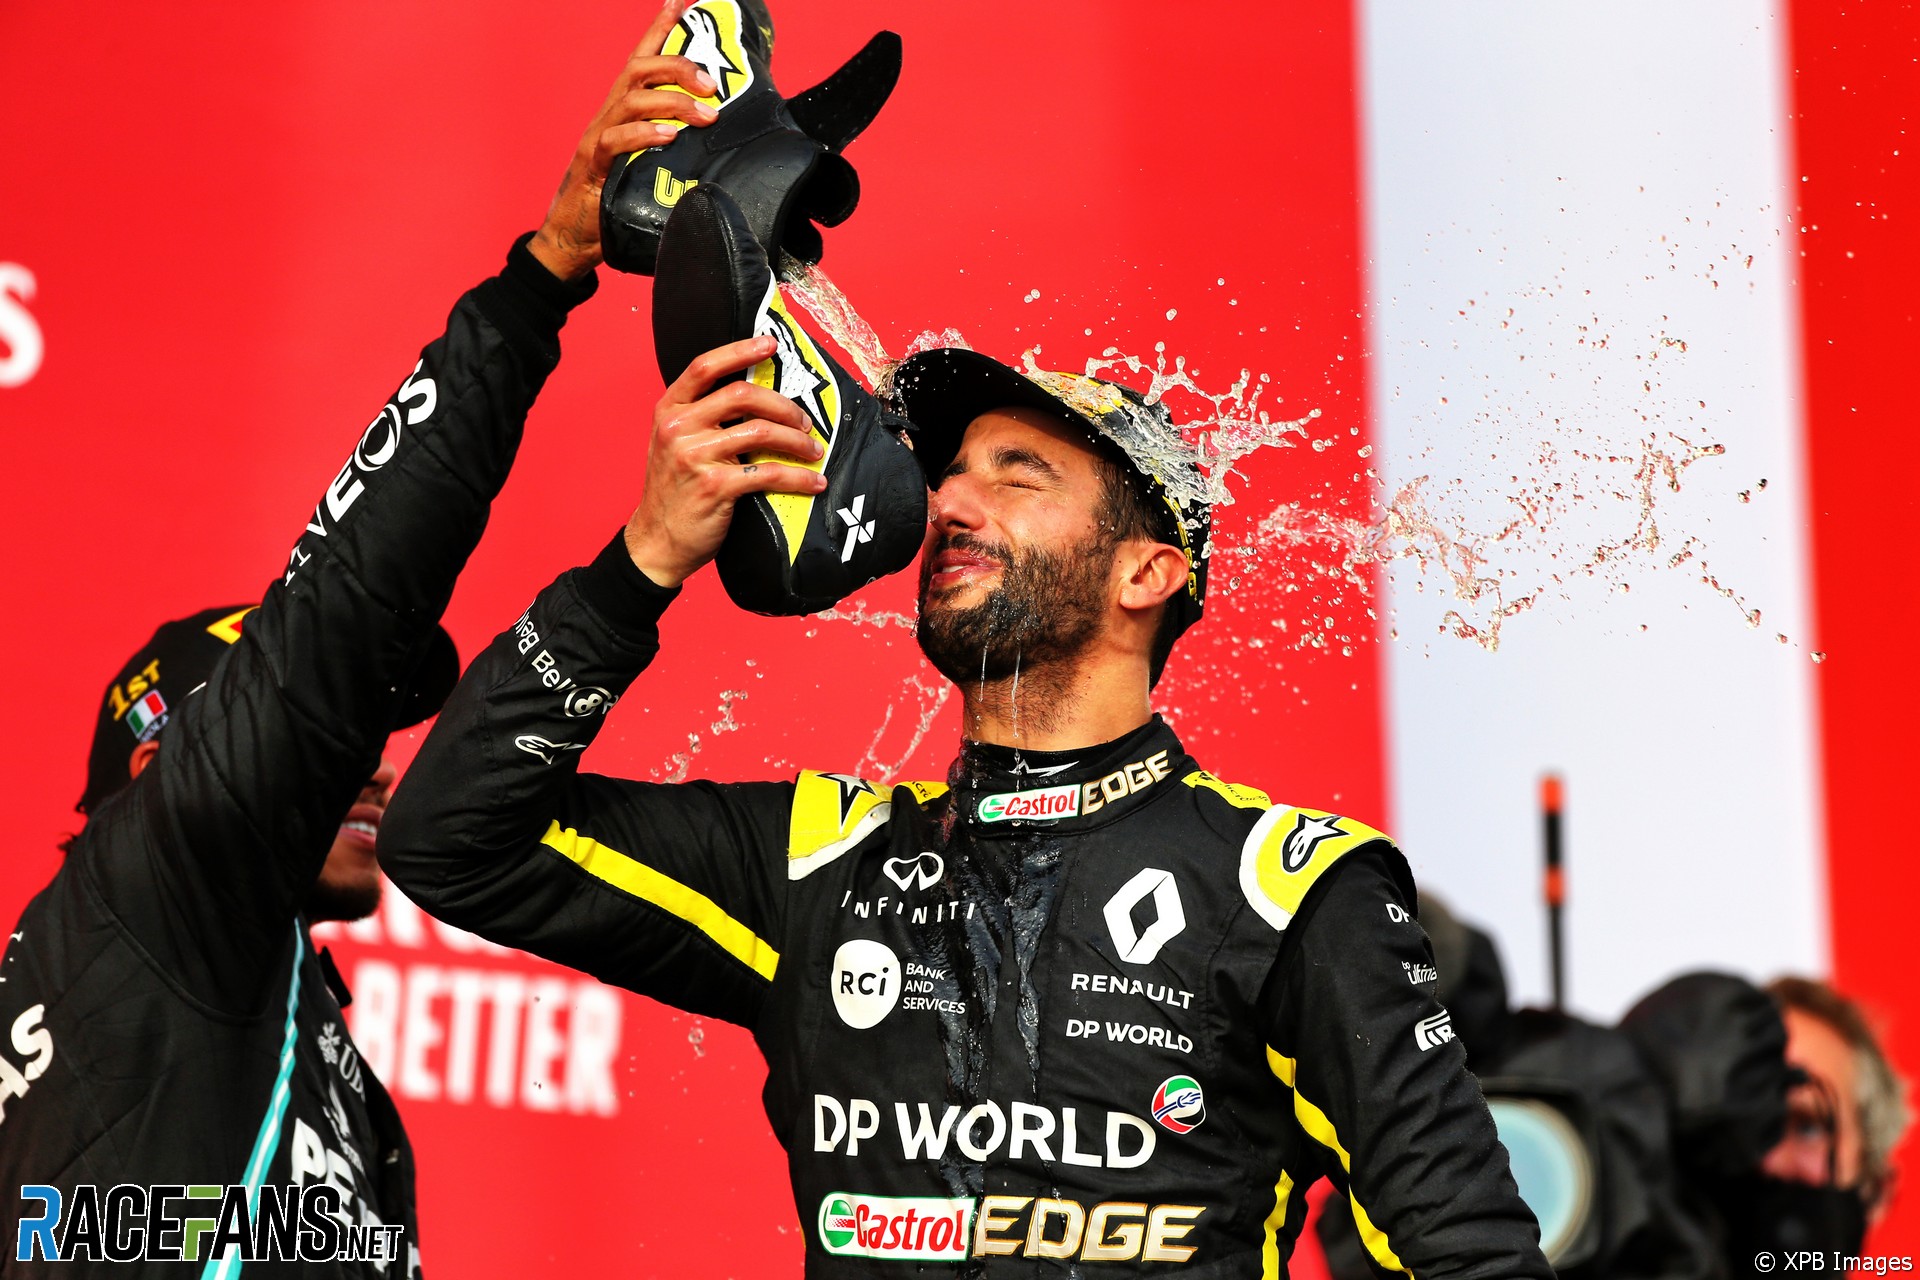 Daniel Ricciardo, Renault, Imola, 2020